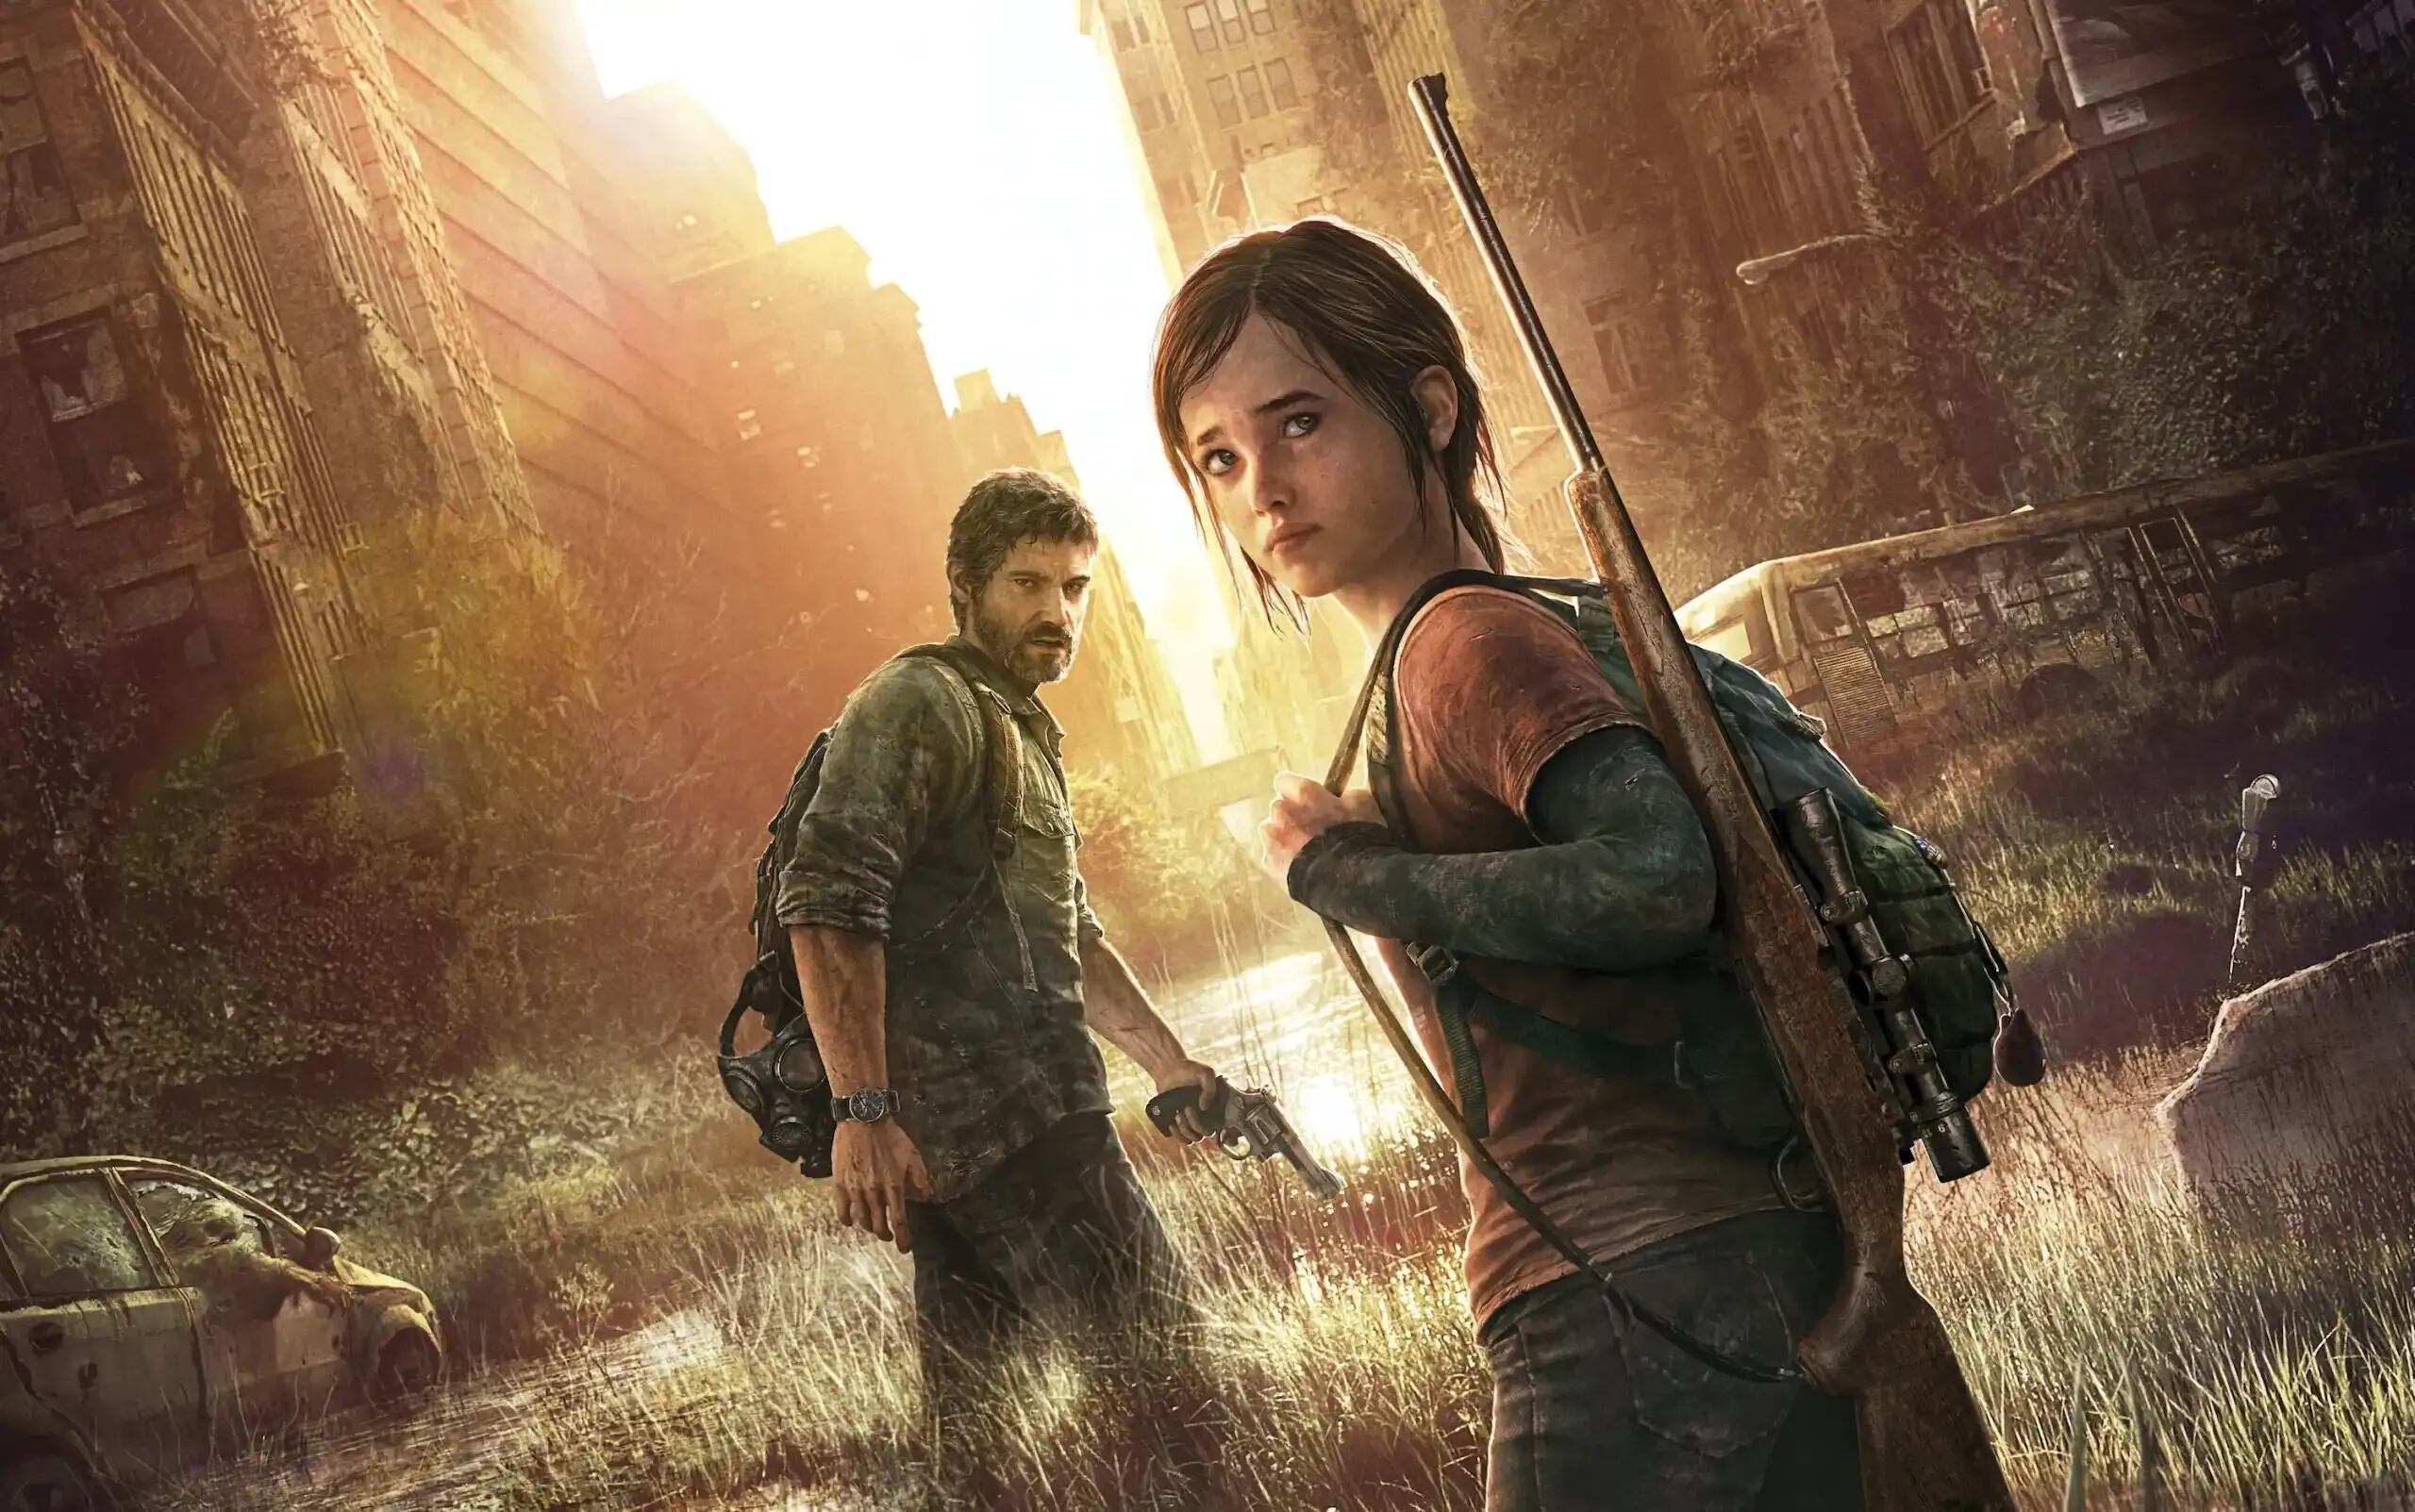 La primera entrega de 'The Last Of Us' se lanzó en el 2013 en PS3 y ha atravesado también la PS4 y la PS5. Su culto es enorme. Foto: HBO